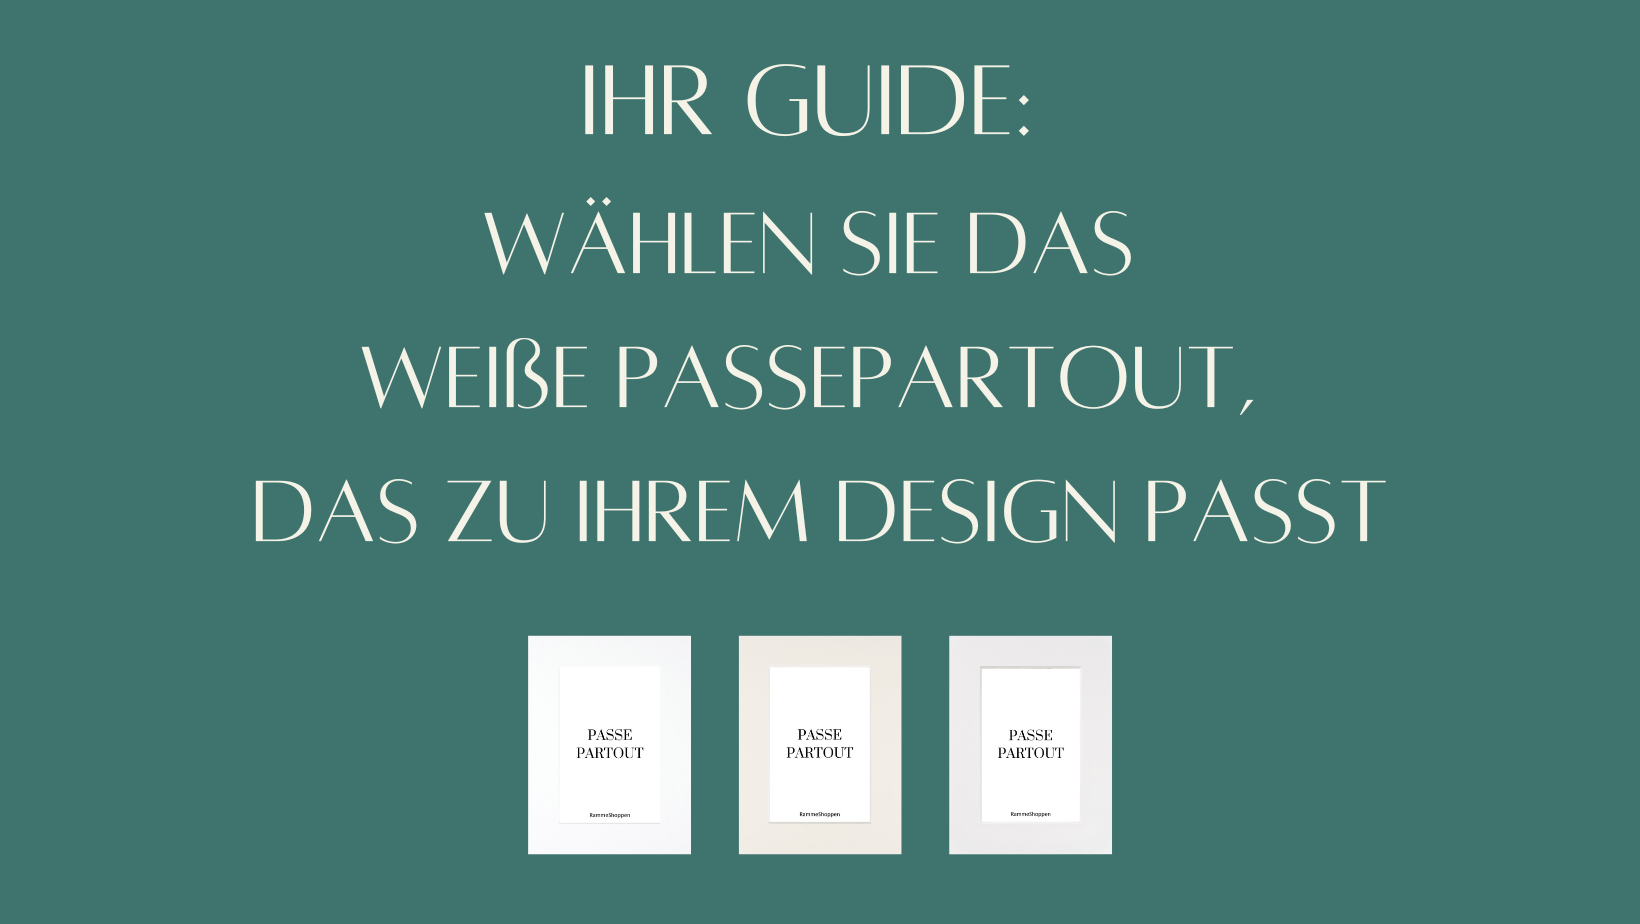 Wählen Sie das weiße passepartout, das zu Ihrem design passt